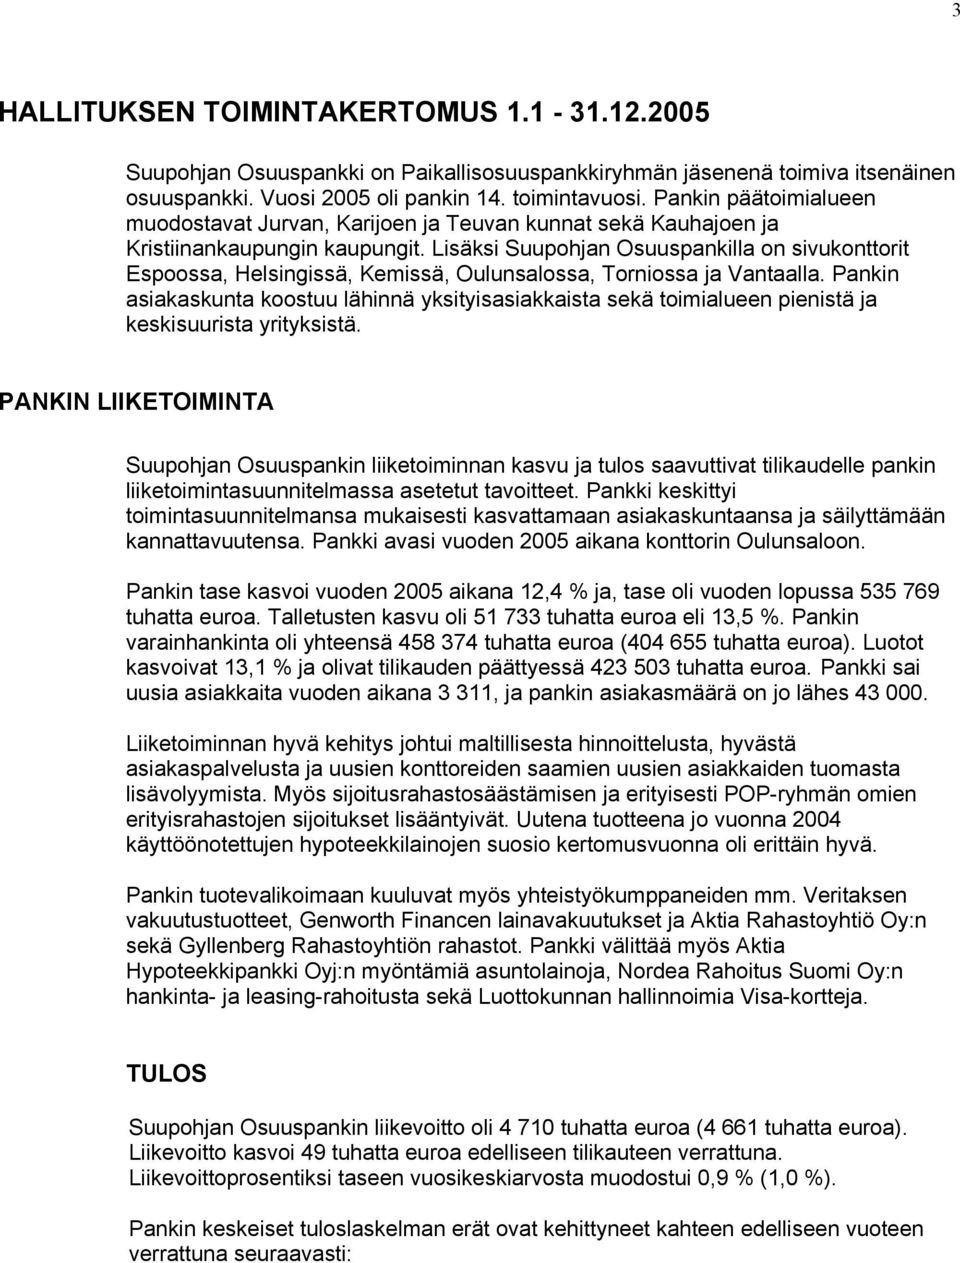 Lisäksi Suupohjan Osuuspankilla on sivukonttorit Espoossa, Helsingissä, Kemissä, Oulunsalossa, Torniossa ja Vantaalla.